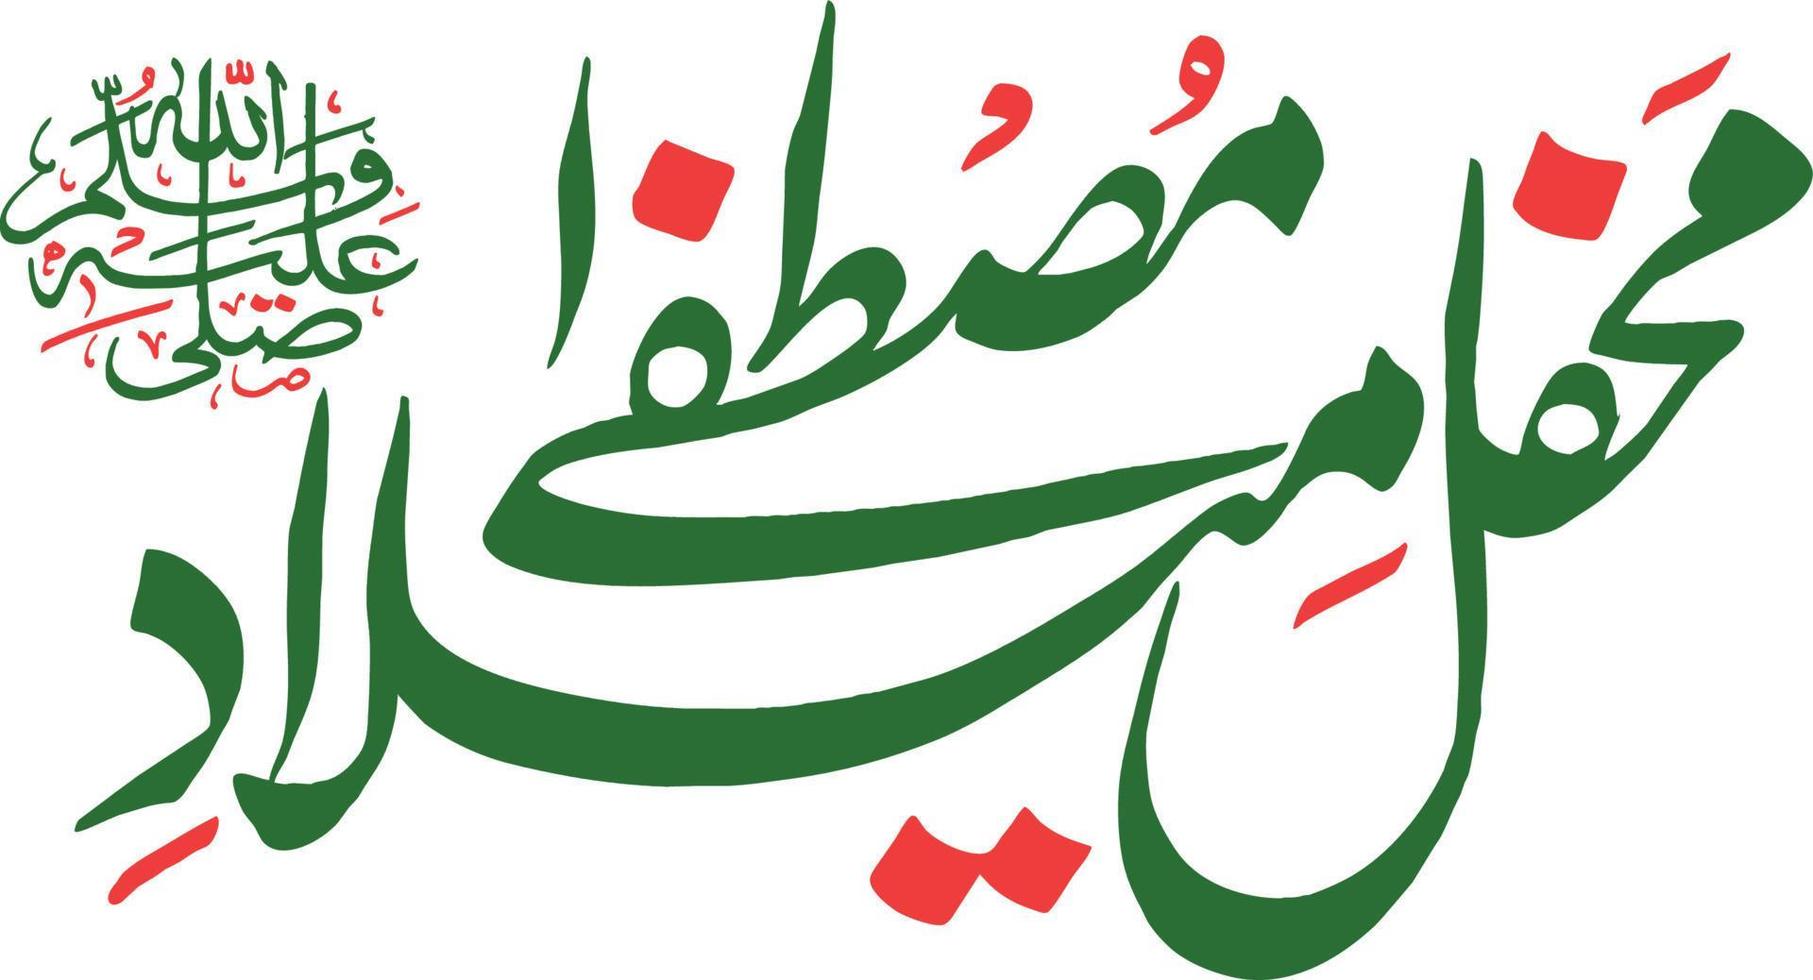 mhafel melad mustafa título islámico urdu árabe caligrafía vector libre